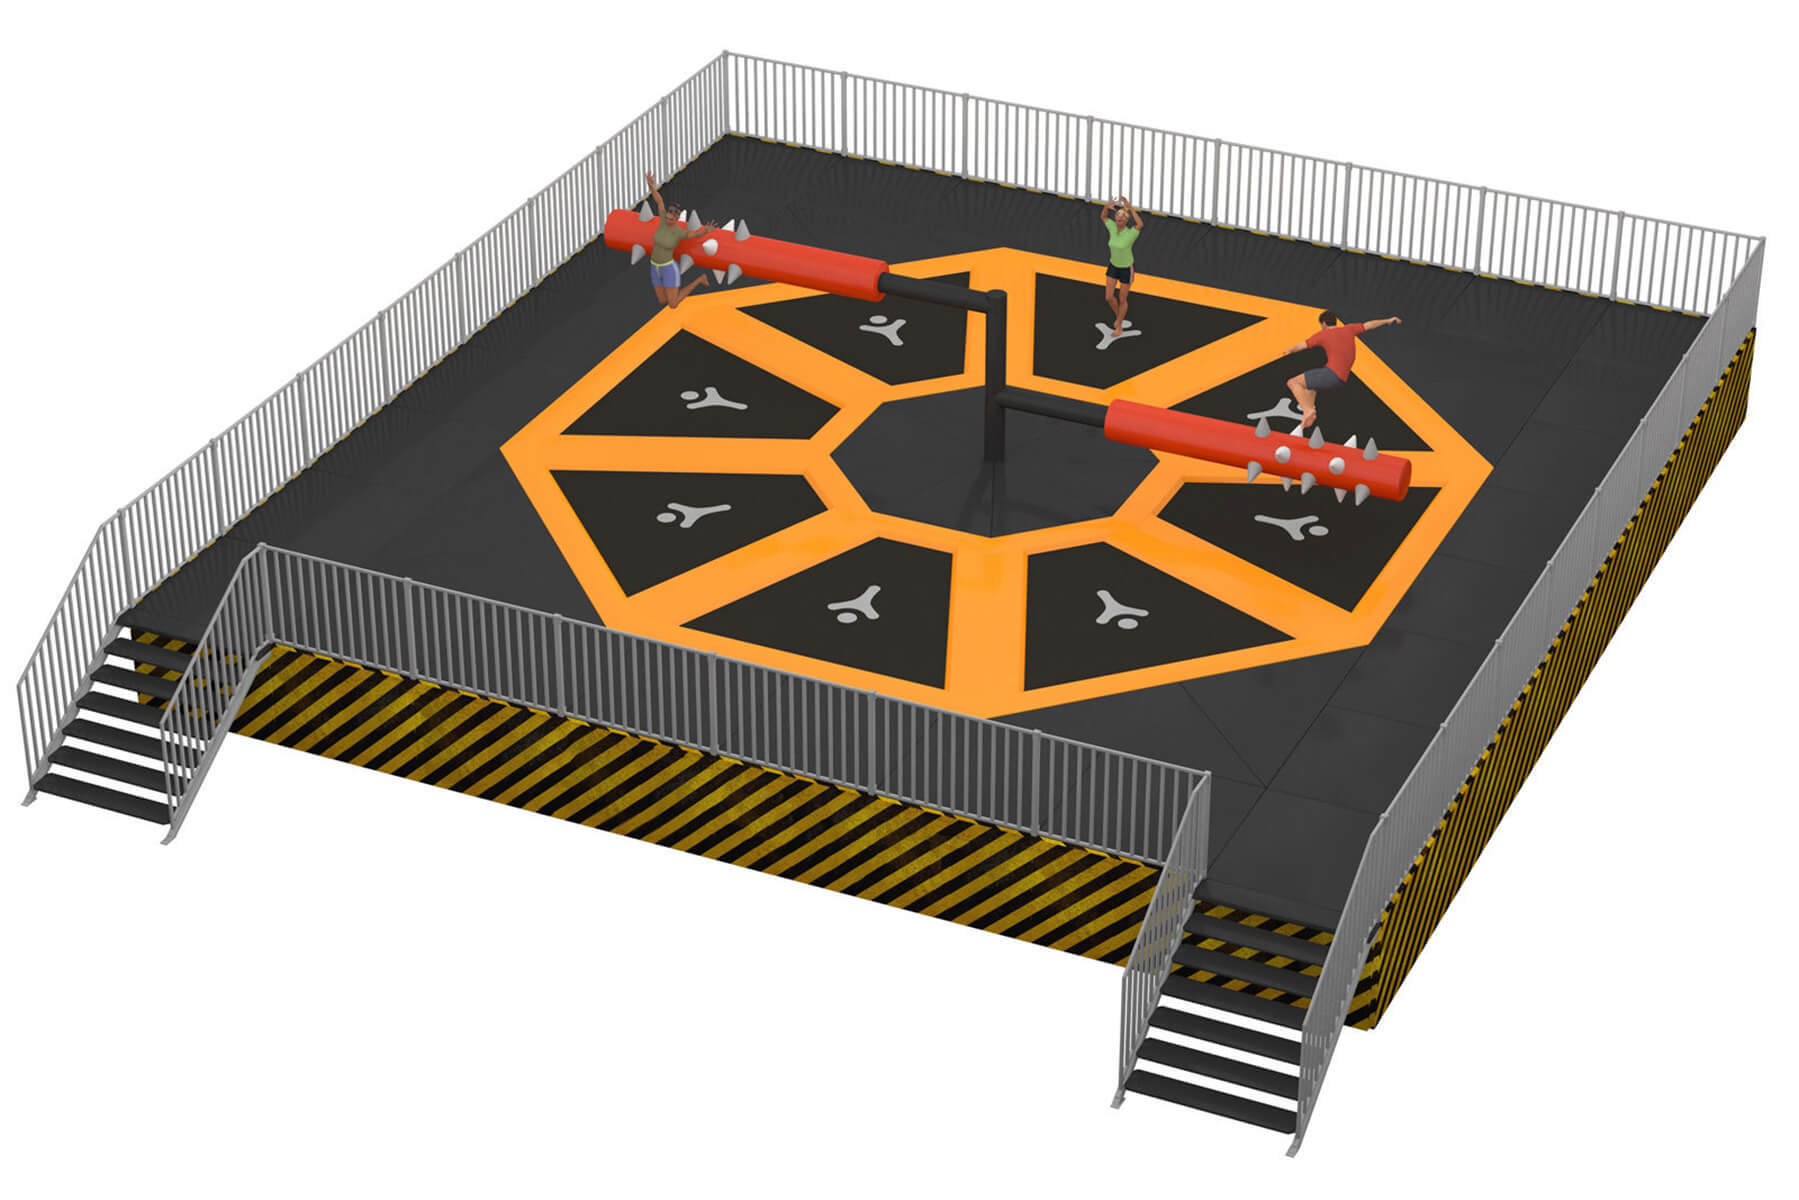 ELI Play supplier trampoline park, element Twister